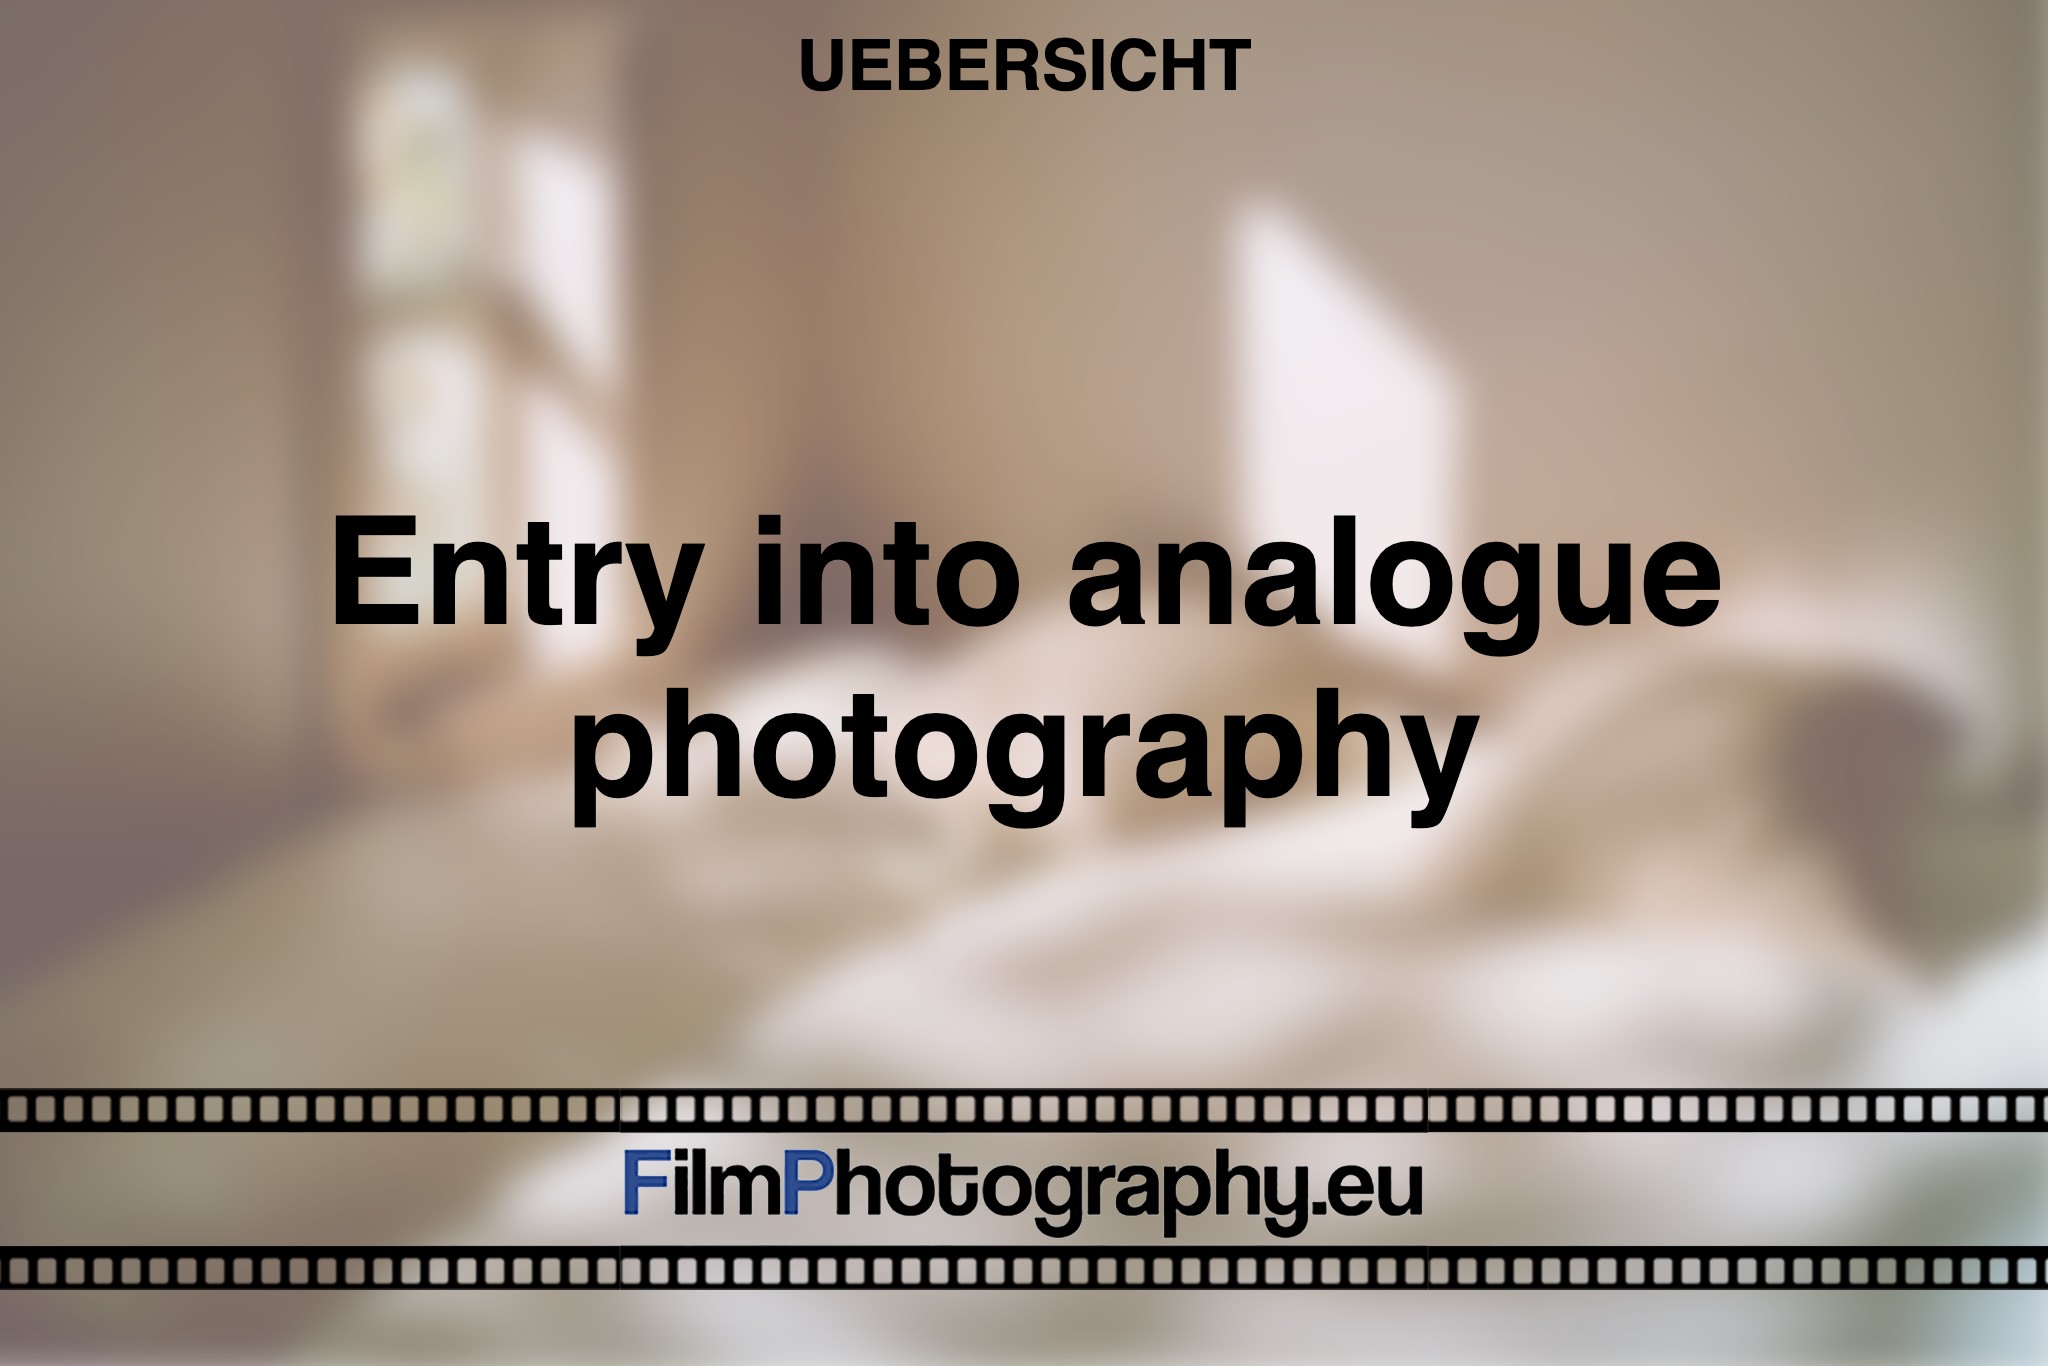 entry-start-analog-photography-film-photo-bnv